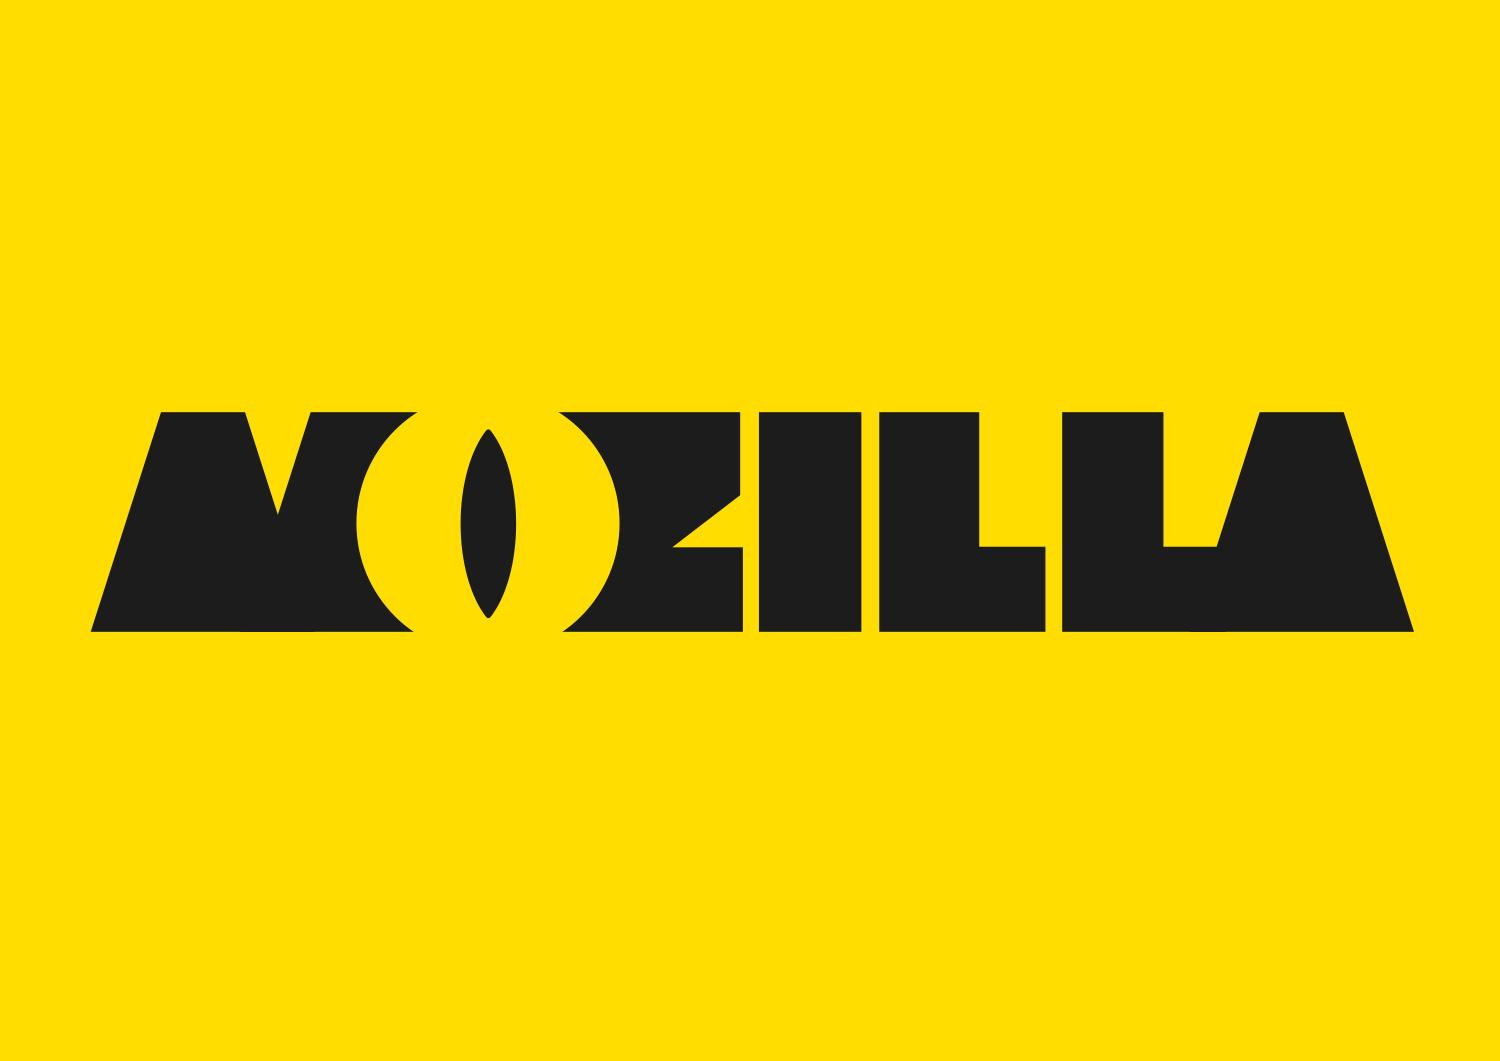 Mozzila Logo - Design Route A: The Eye Open Design